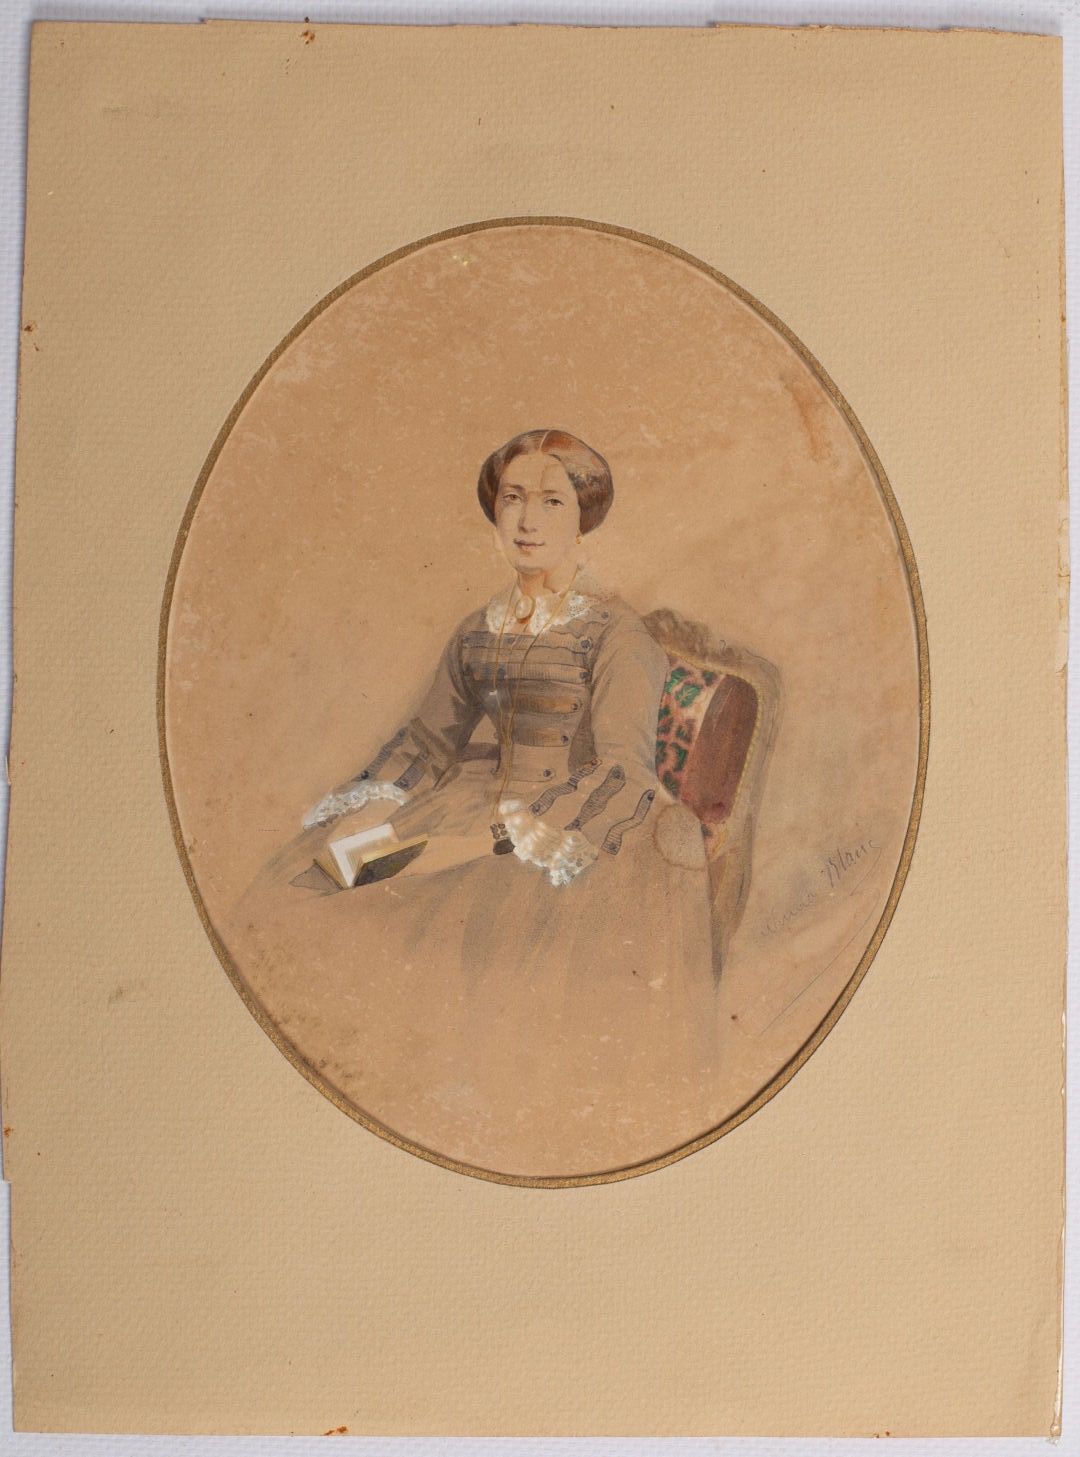 Null 努马-布朗（1816-1897）。

一个正在读书的女人的肖像。

纸上铅笔、墨水和水粉画，用铅笔签名。

高_18,8厘米，宽_15厘米，污渍